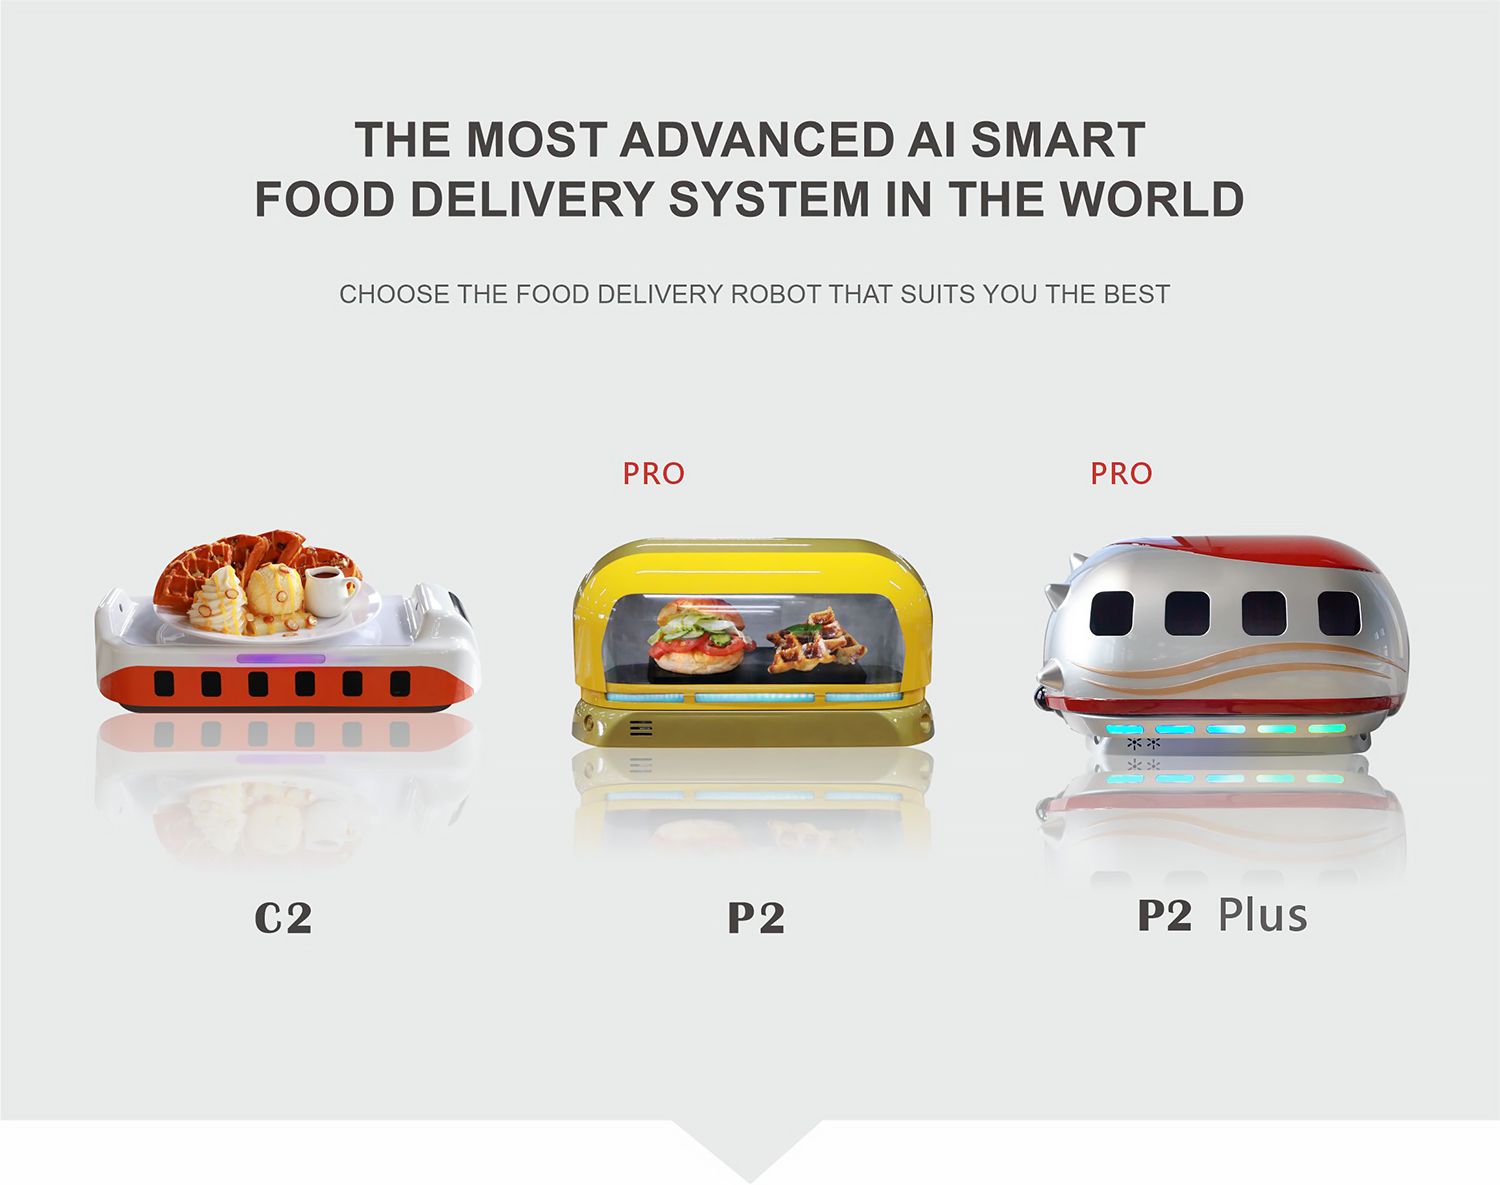 軌道送餐機器人 หุ่นยนต์ส่งอาหาร